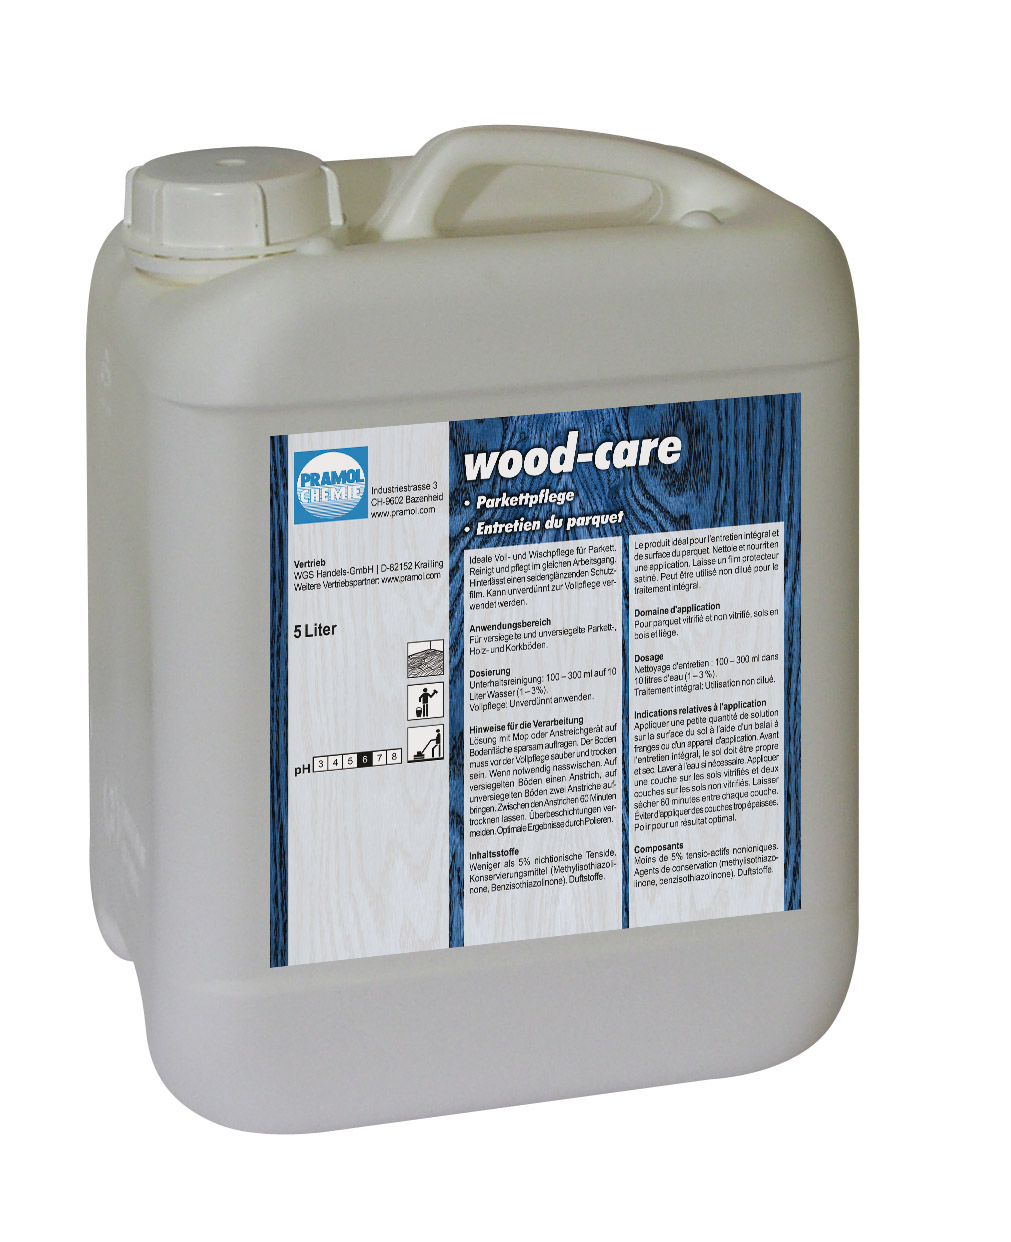 Pramol wood-care, Parkettpflege, Wischpflege mit Wachsanteilen für Parkett, weiß, 5 Liter